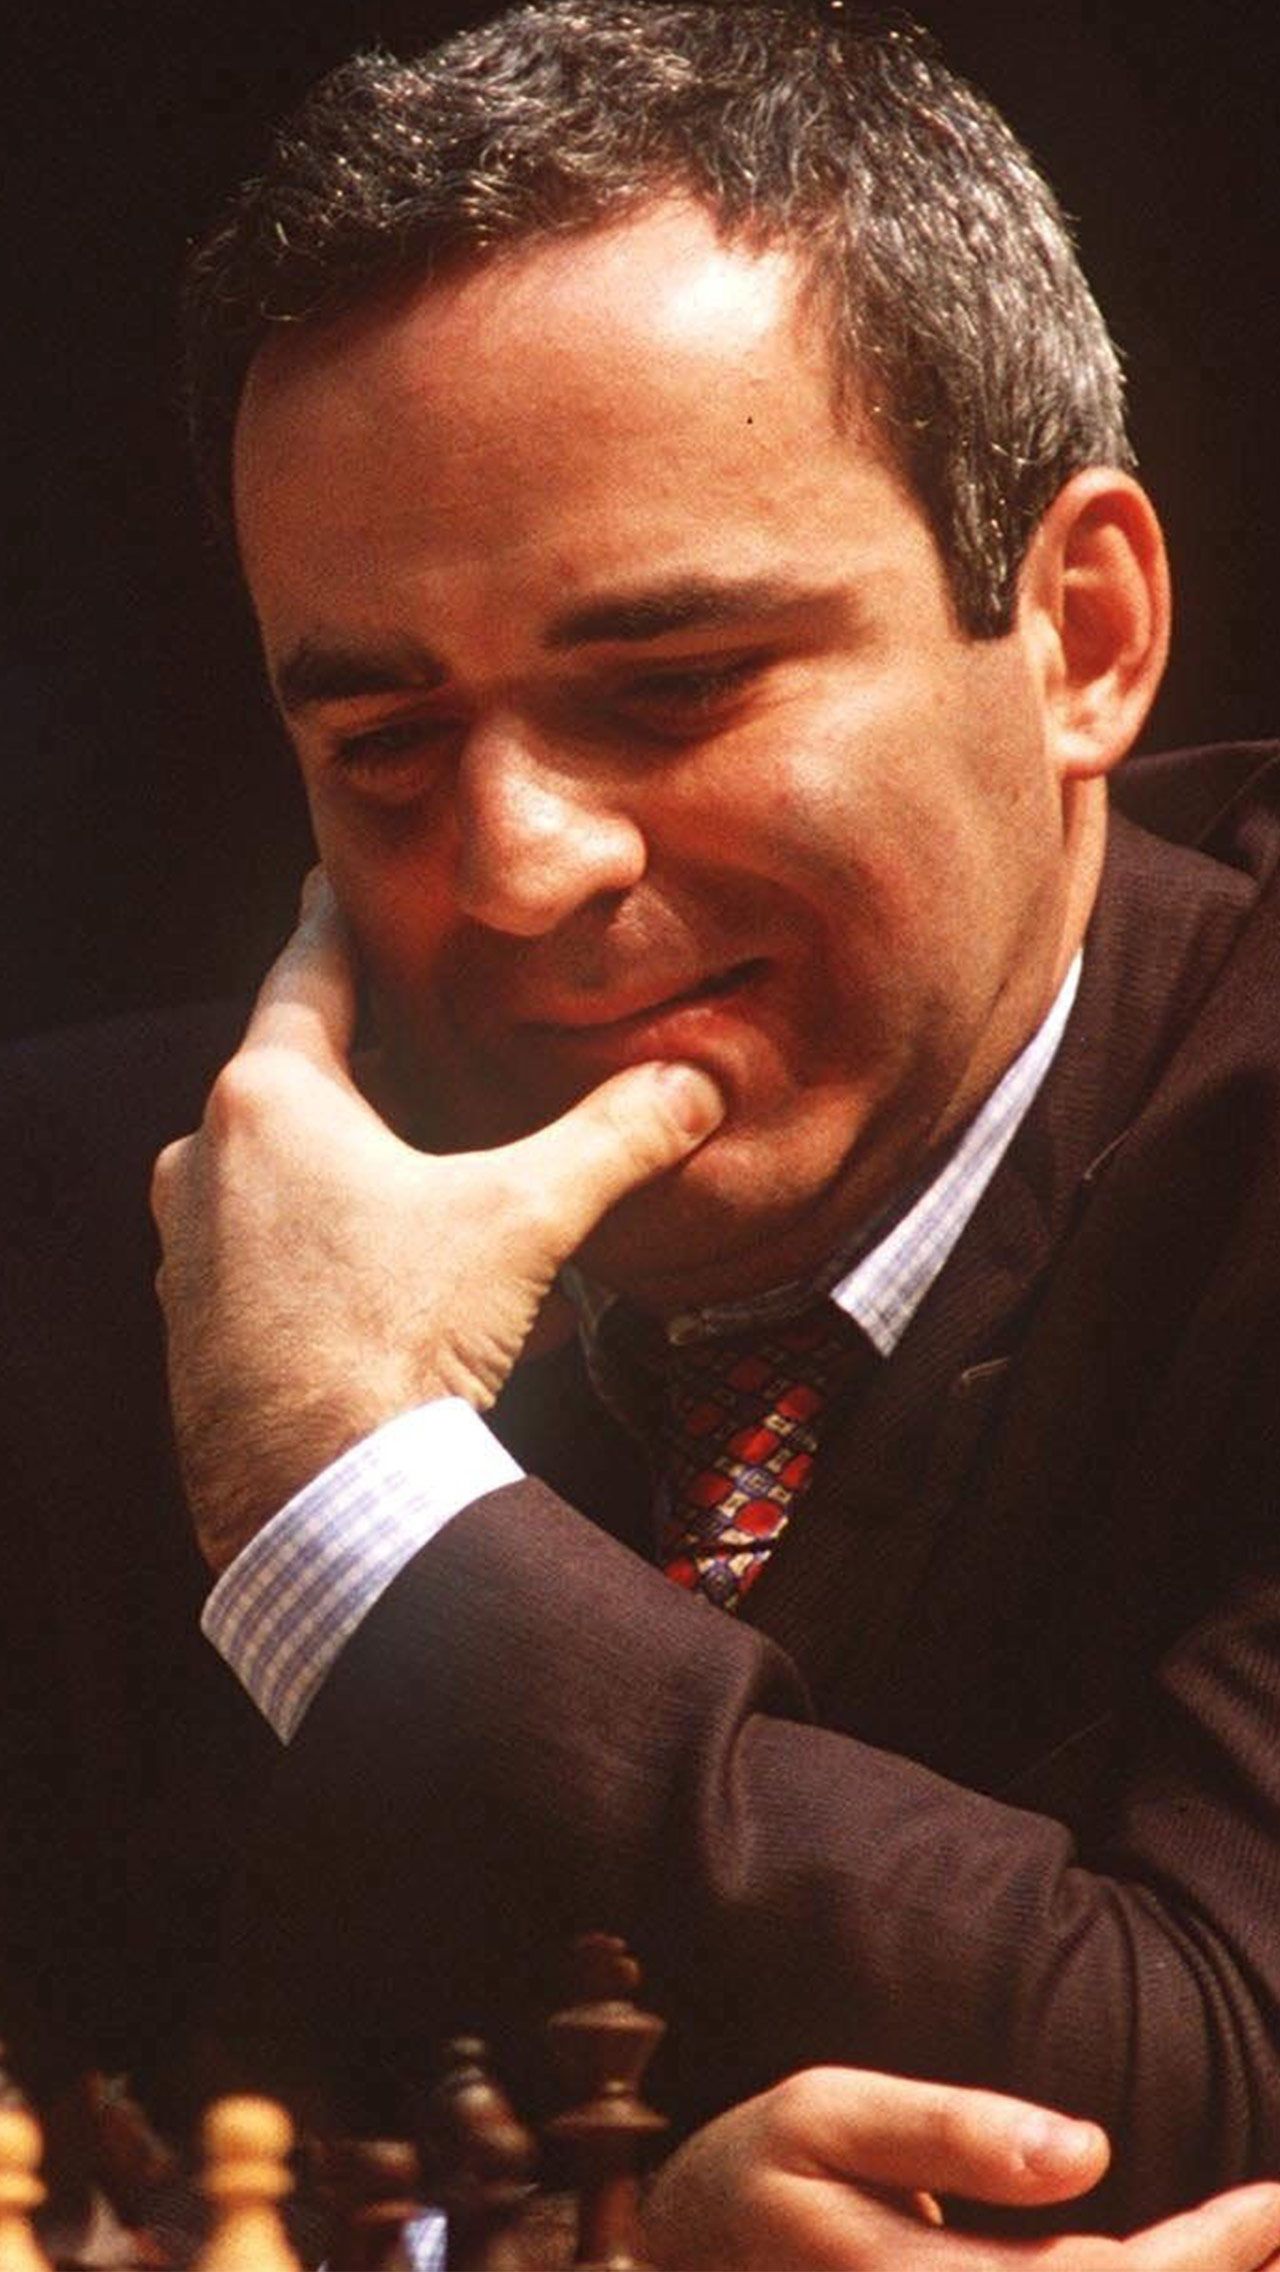 Политические заявления Каспаров делал, ещё будучи игроком. Например, перед скандальным матчем с Карповым в 1990-м он сказал, что СССР мёртв, и отказался играть под красным флагом.